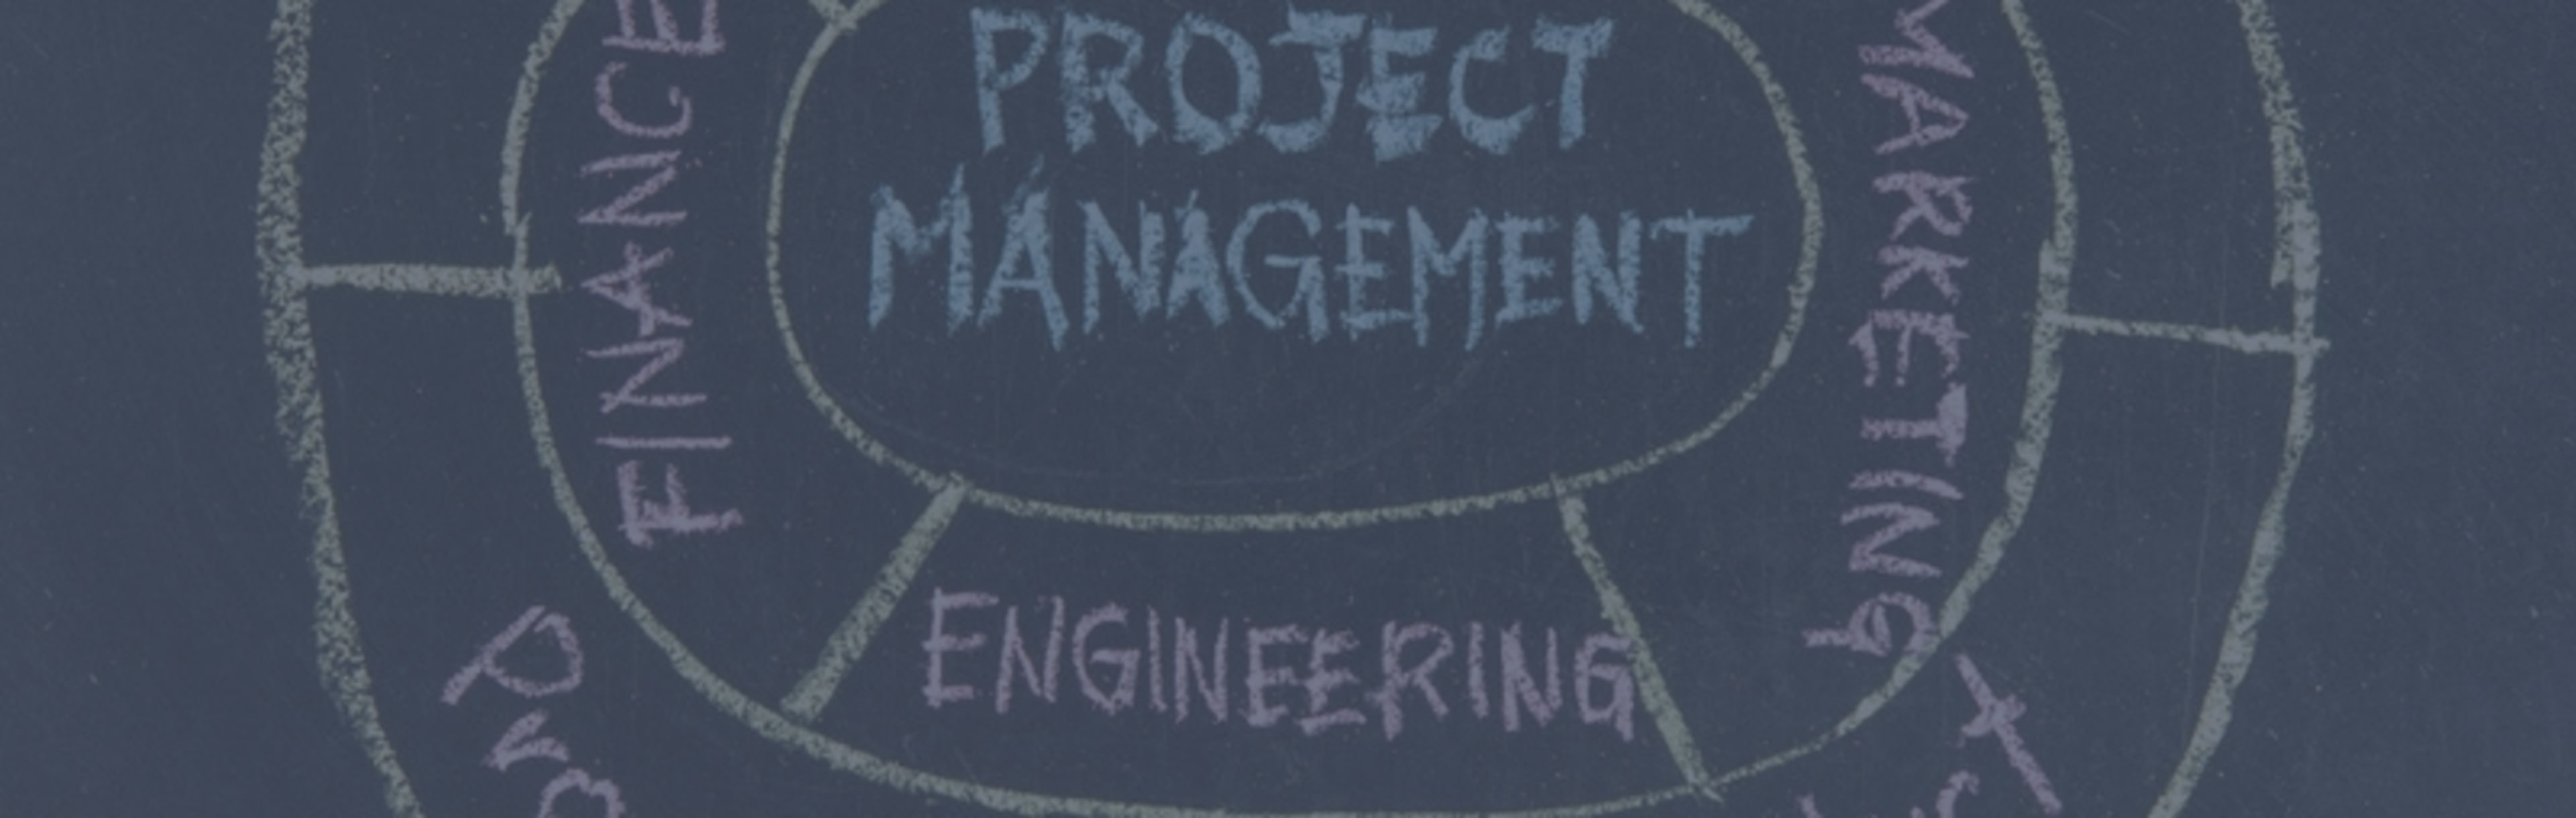 Contatta direttamente le scuole - Confronta 73 Corso Accademico Programmi in Project Management 2023